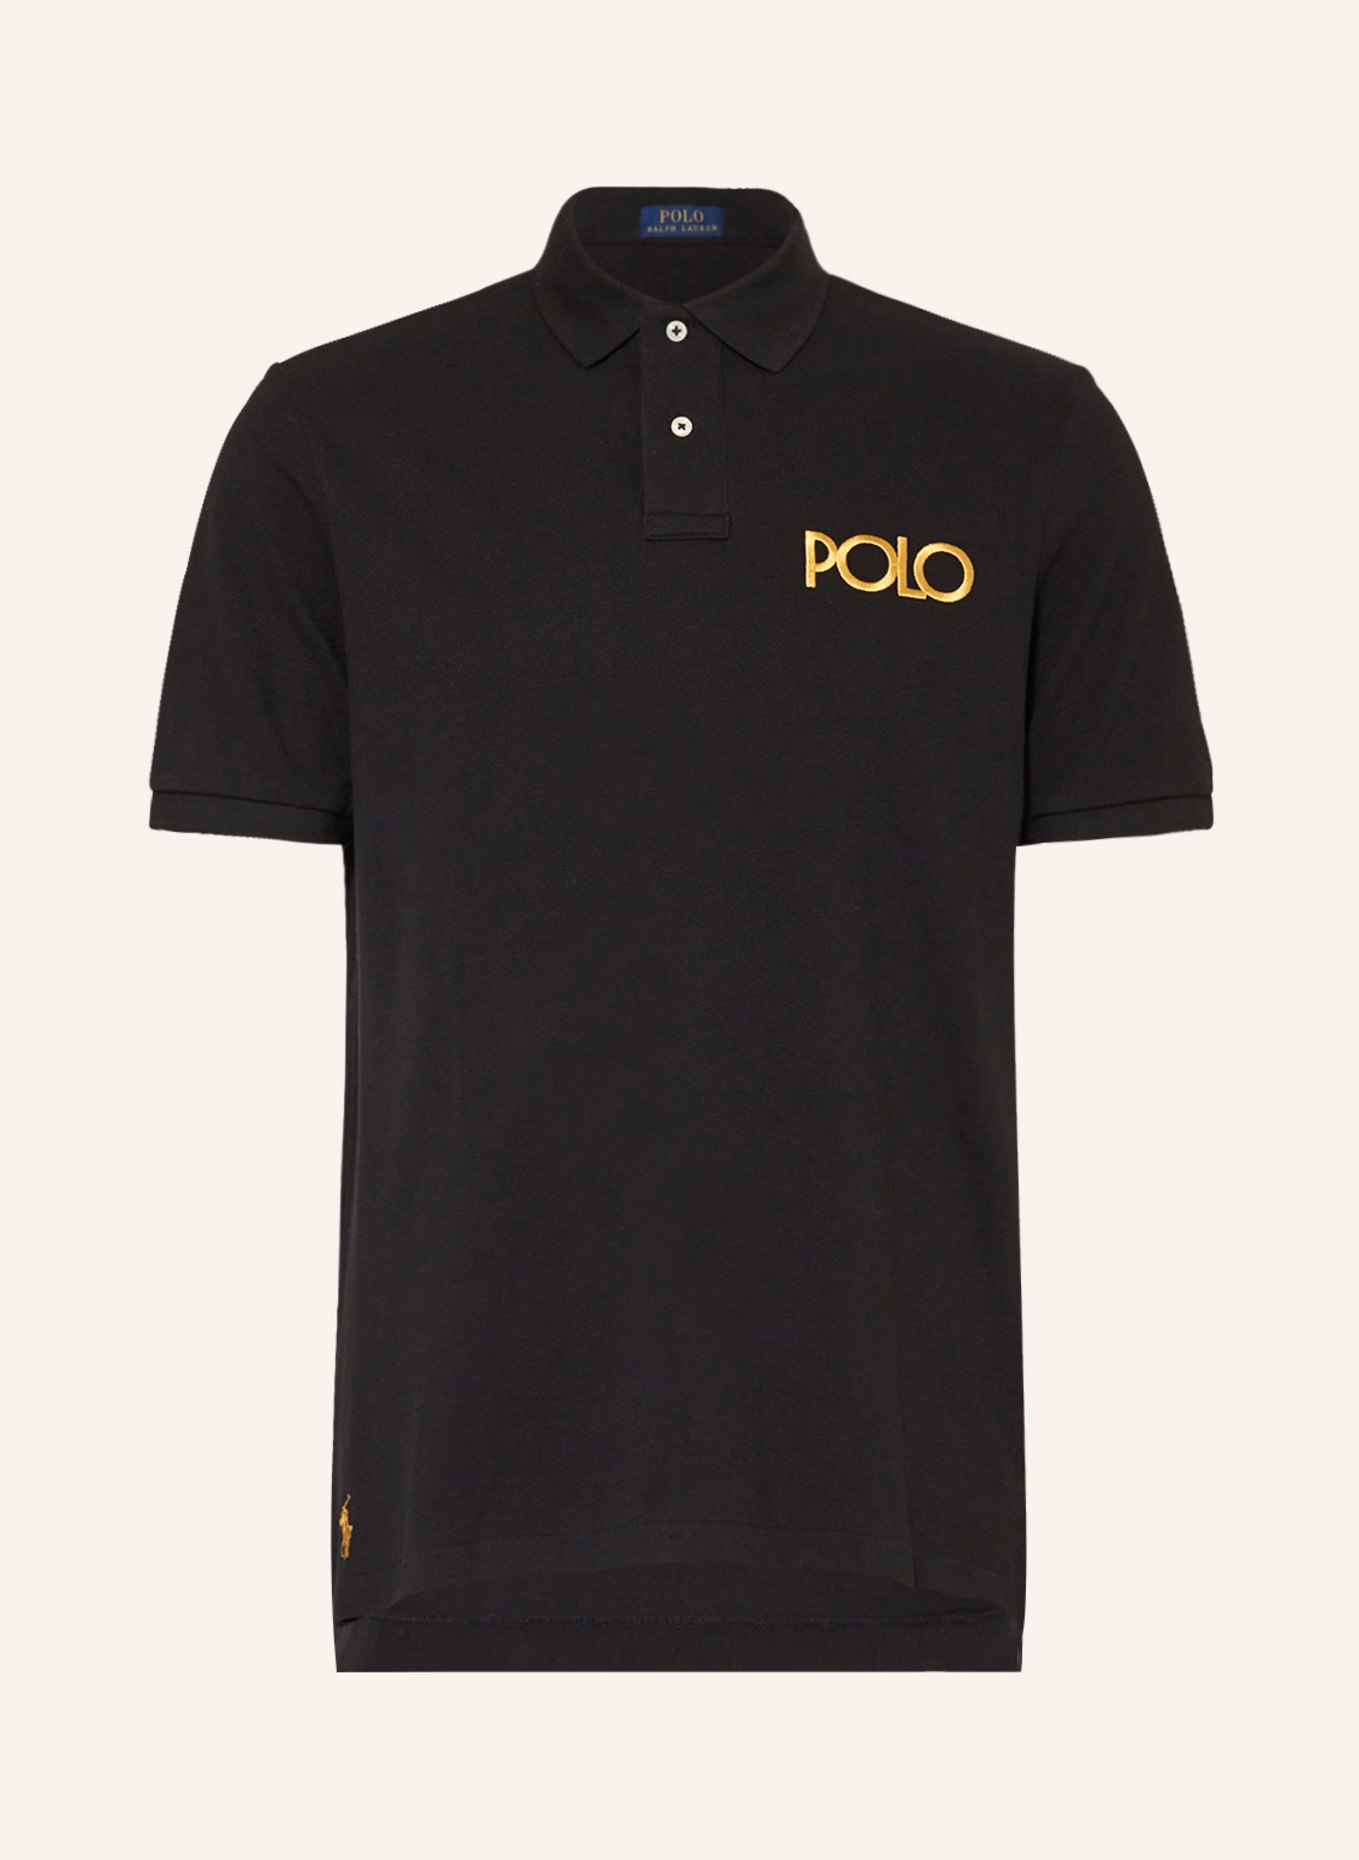 POLO RALPH LAUREN Piqué polo shirt classic fit, Color: DARK BLUE (Image 1)